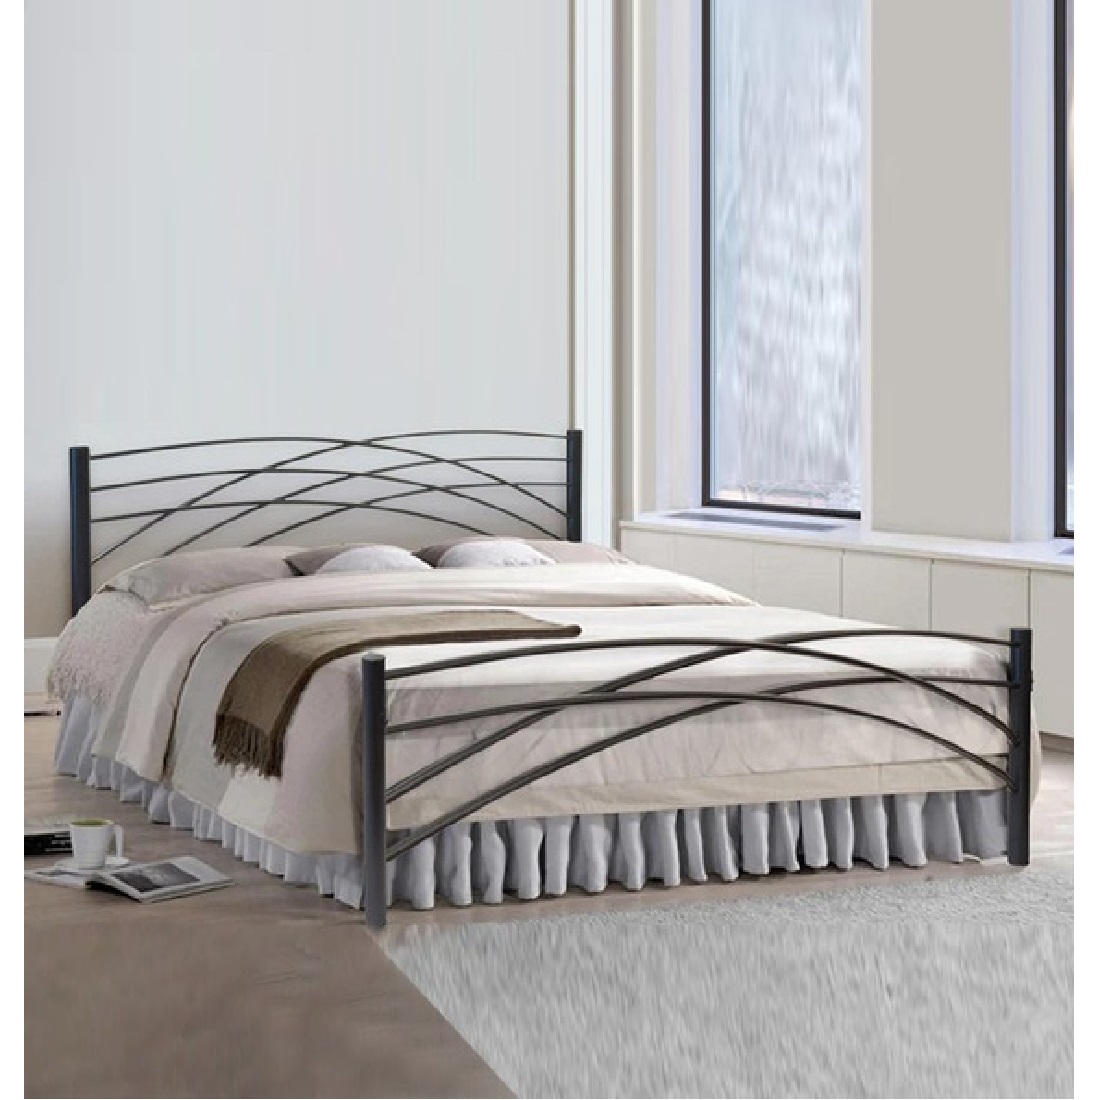 metal bed frame modern design